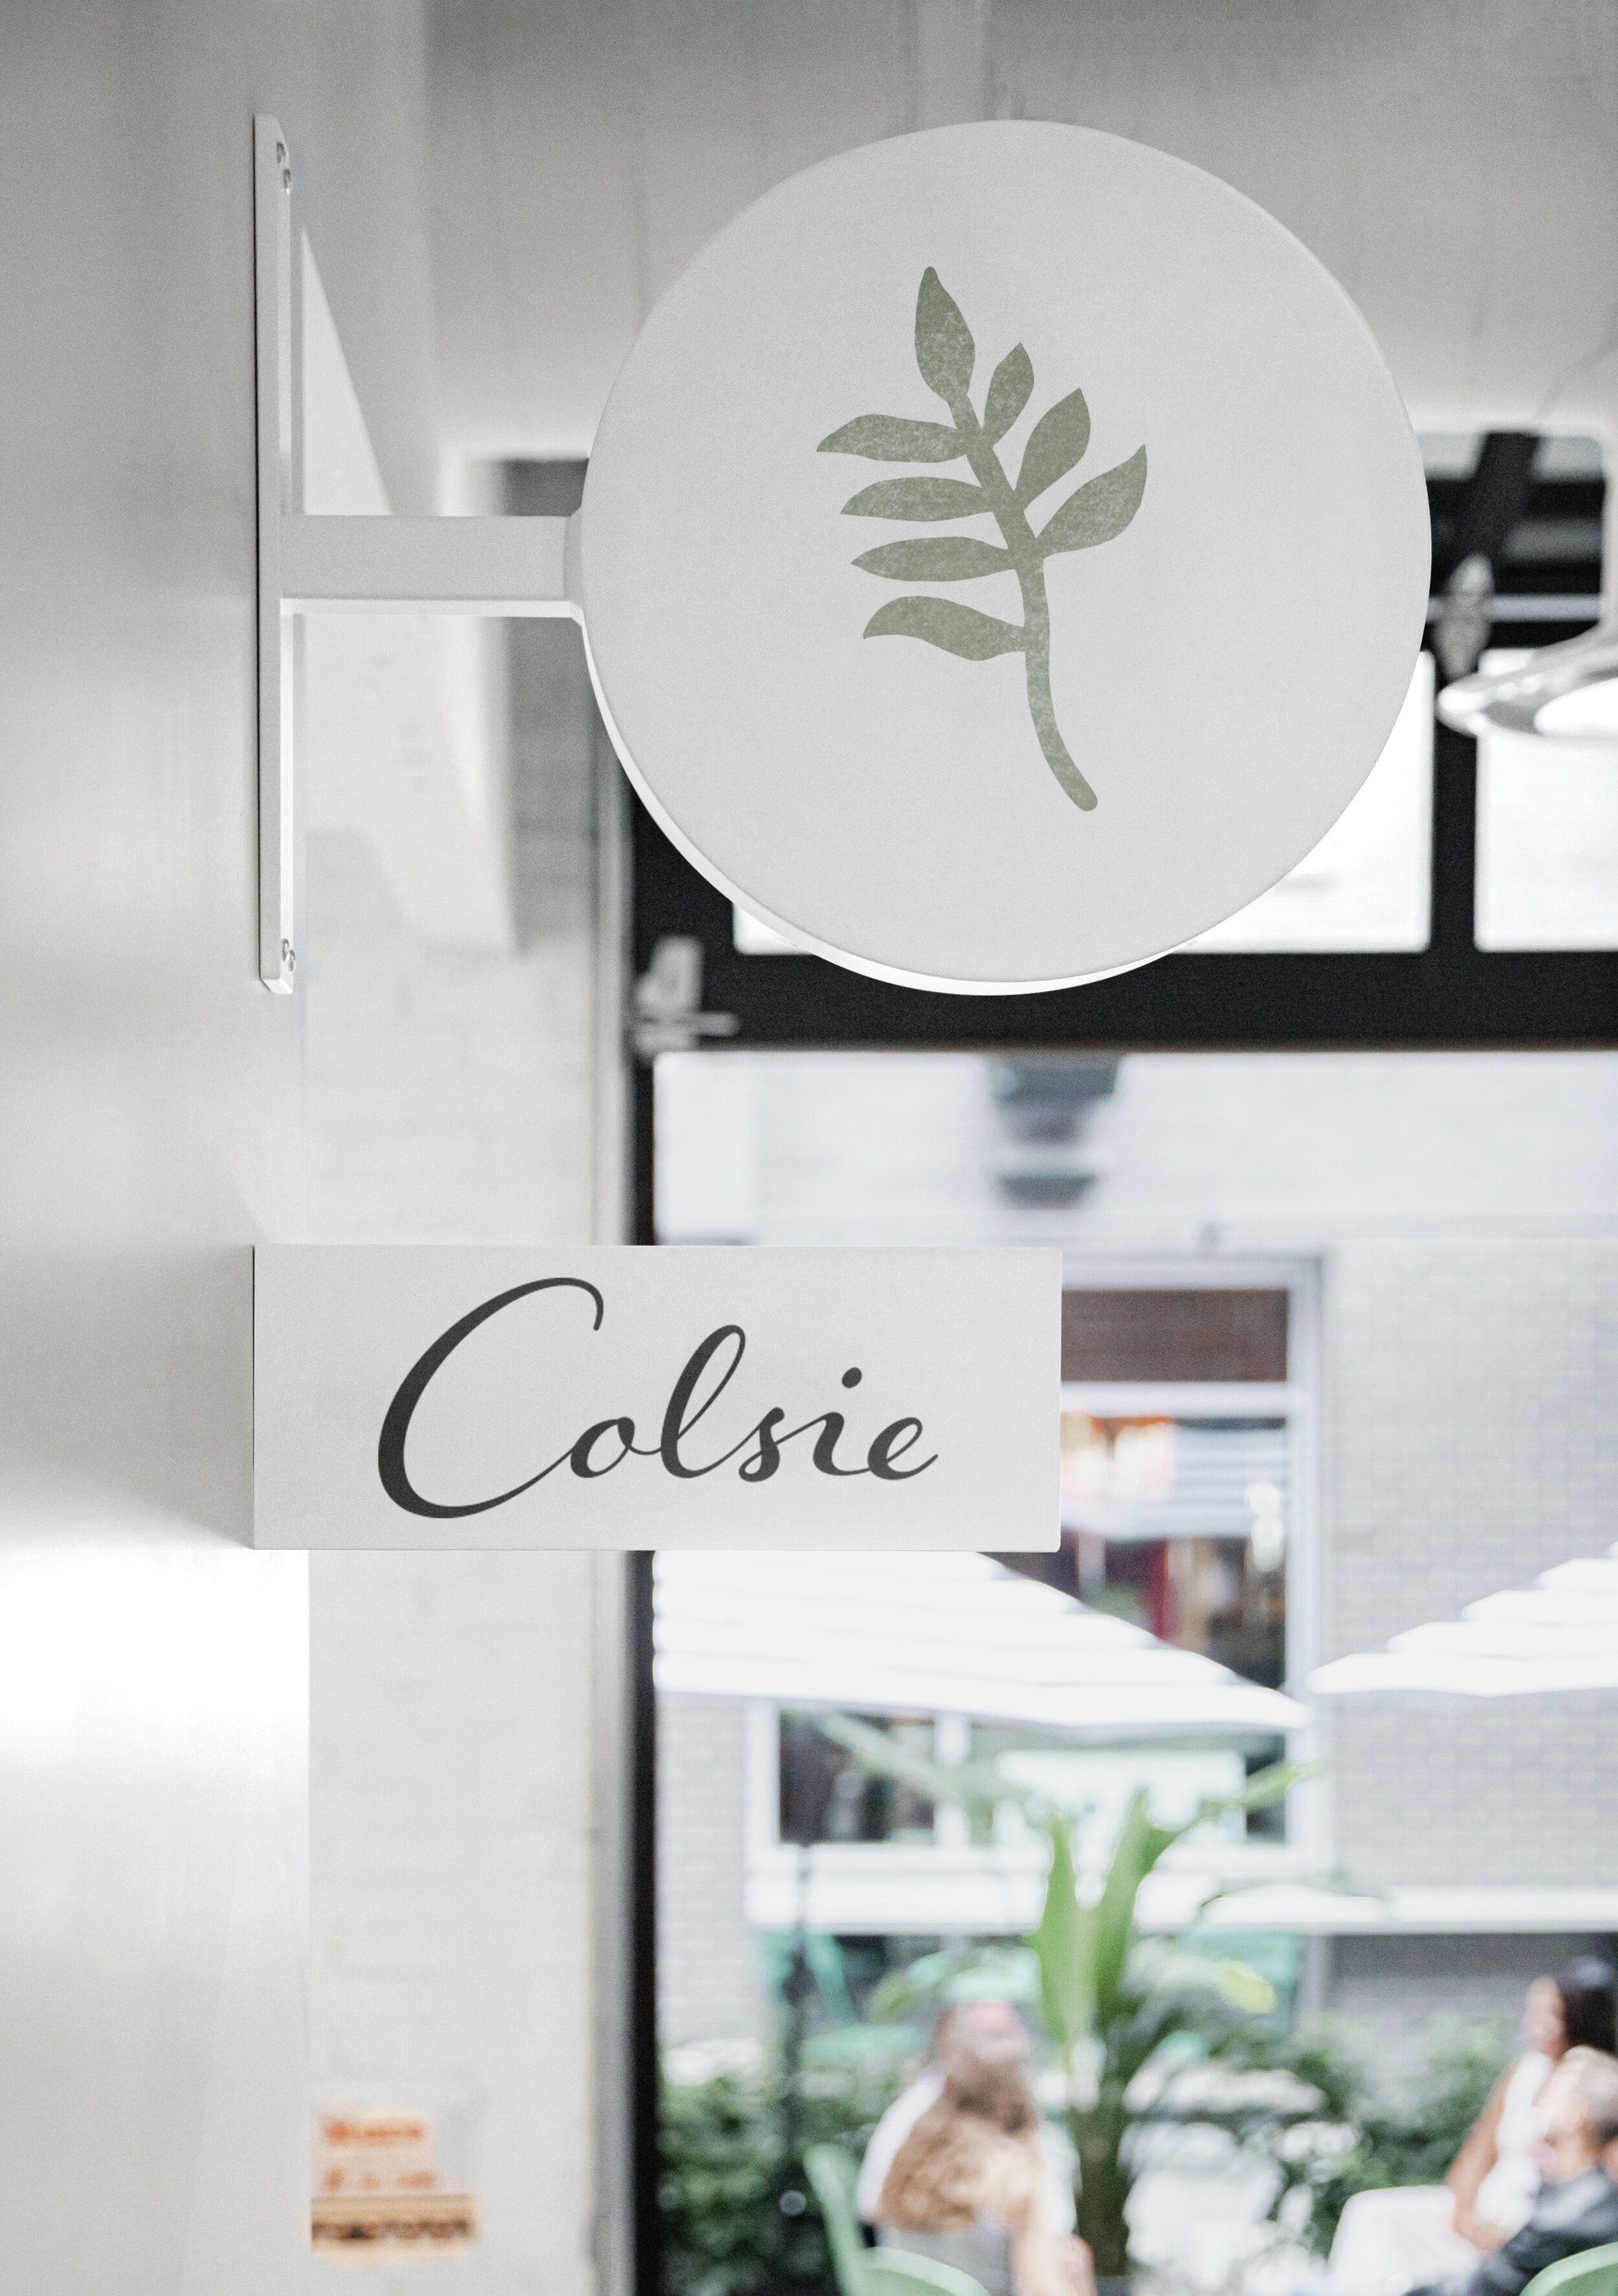 Colsie Rebrand — Kate Bigler